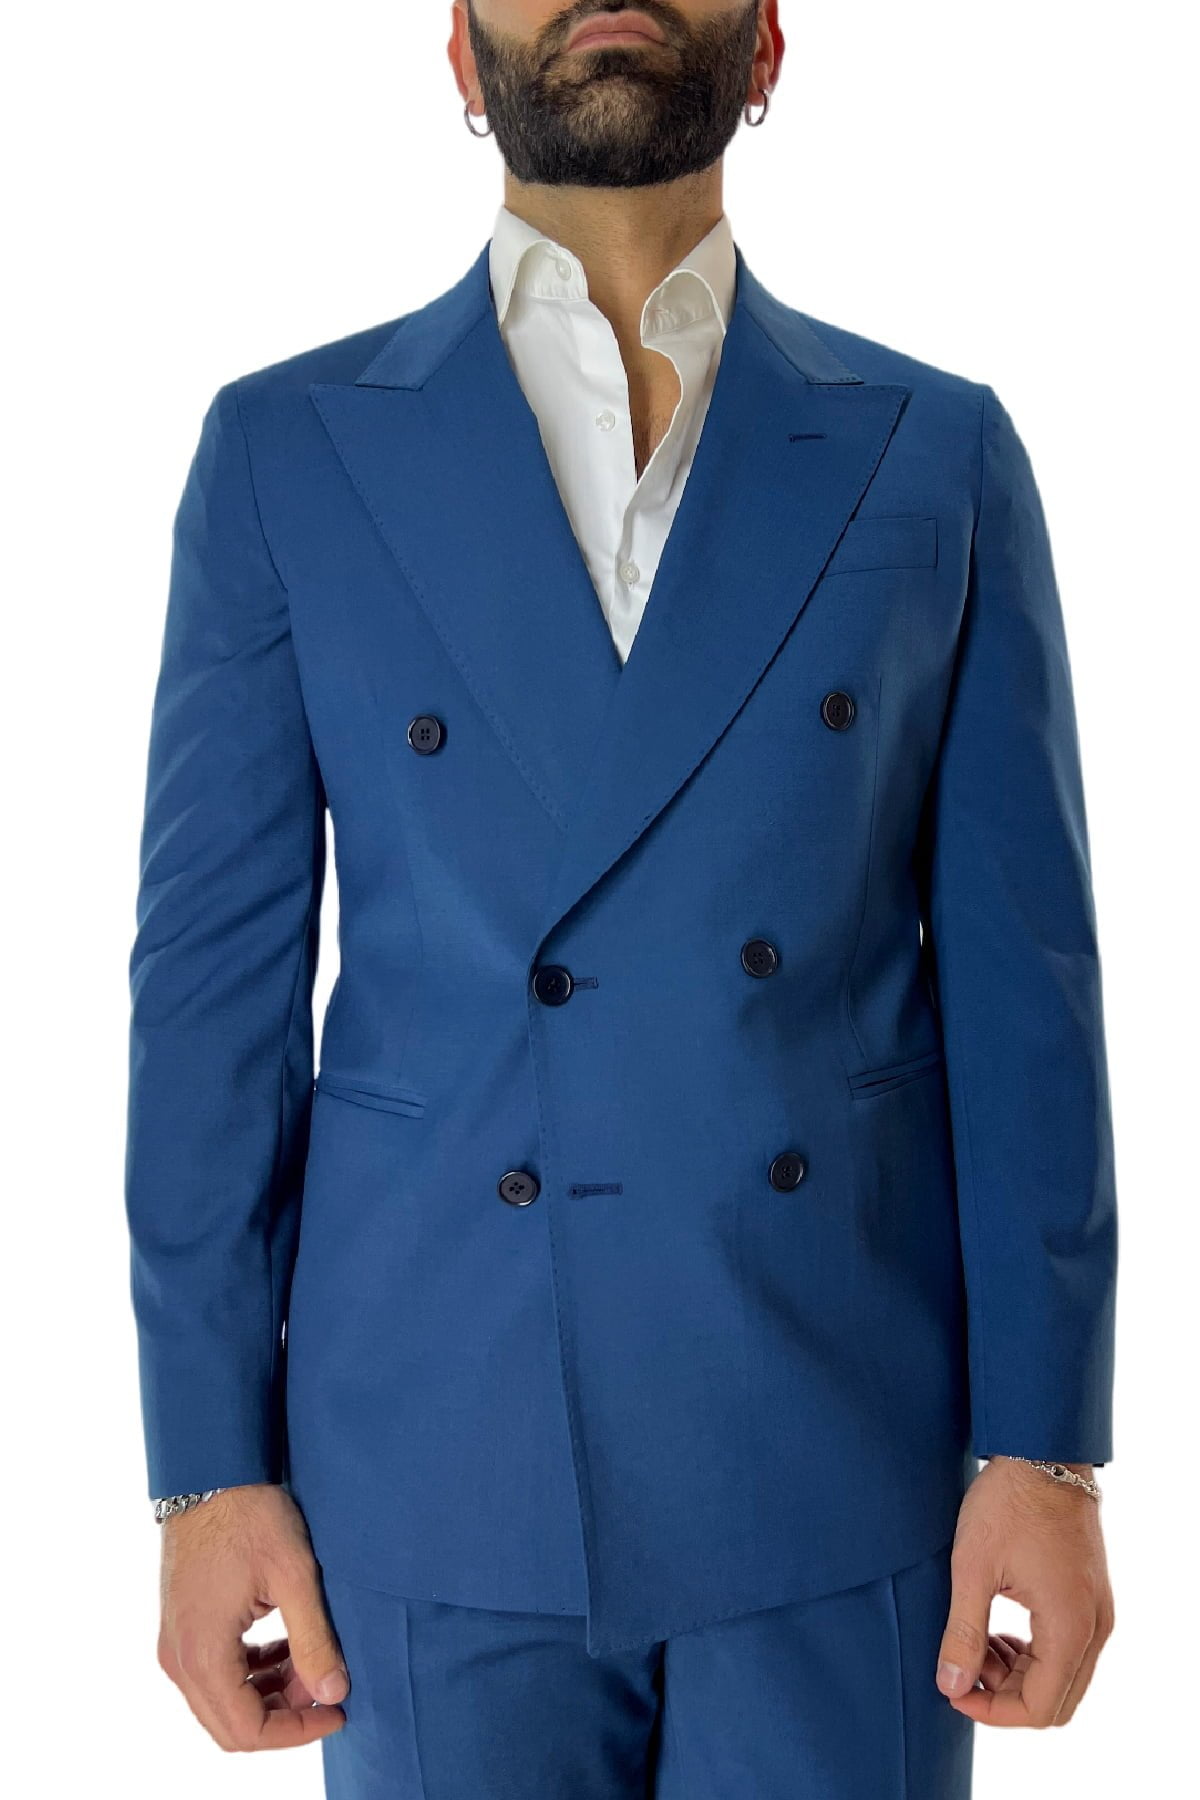 Abito uomo royal blu con giacca doppiopetto e pantalone vita alta in fresco lana made in italy